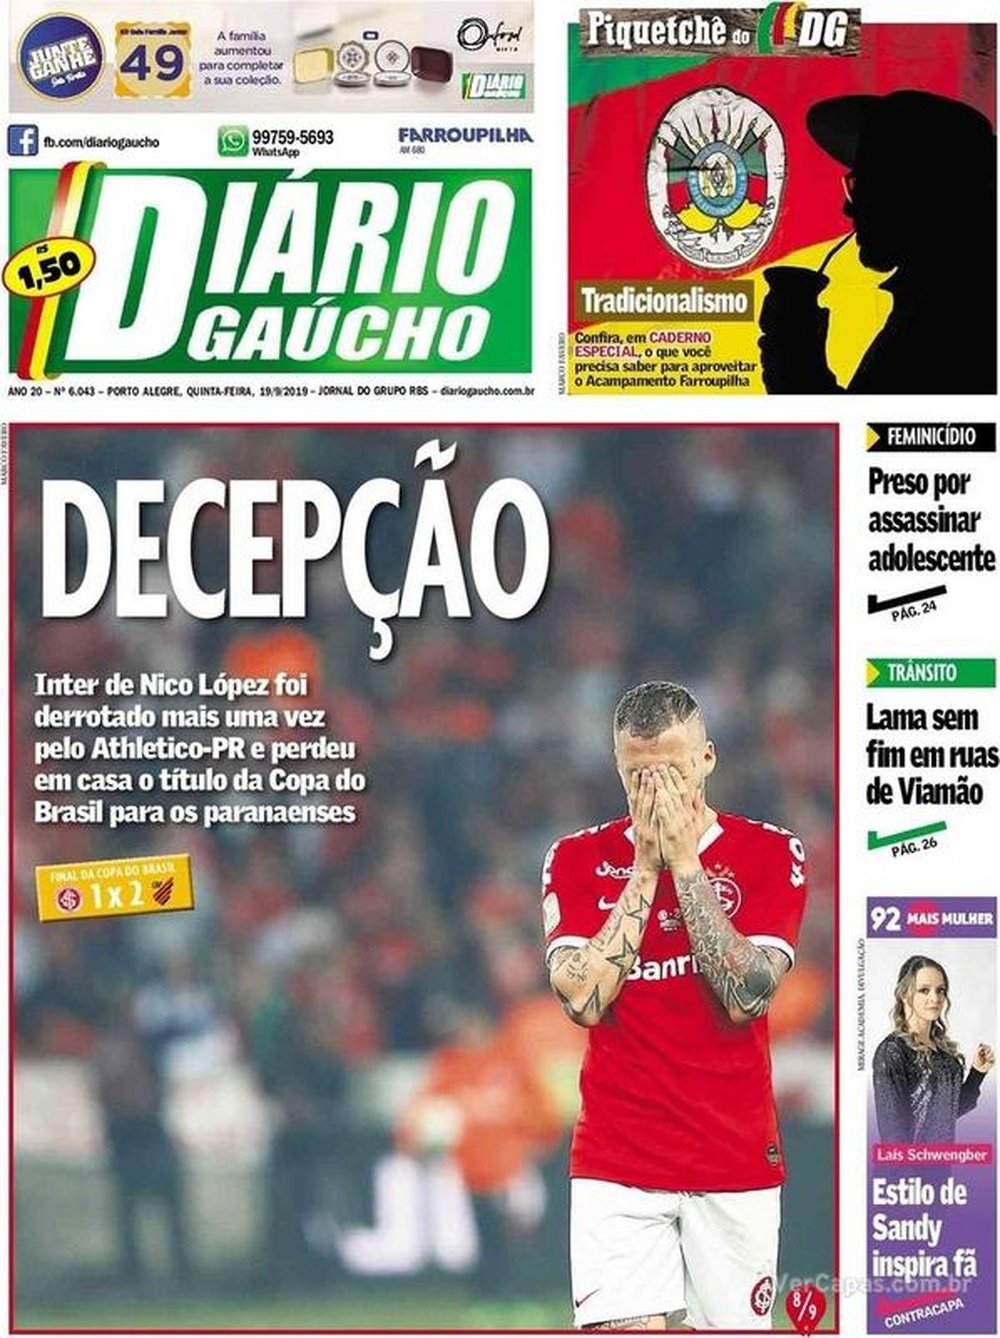 Capa do jornal Diário Gaúcho, de Porto Alegre.